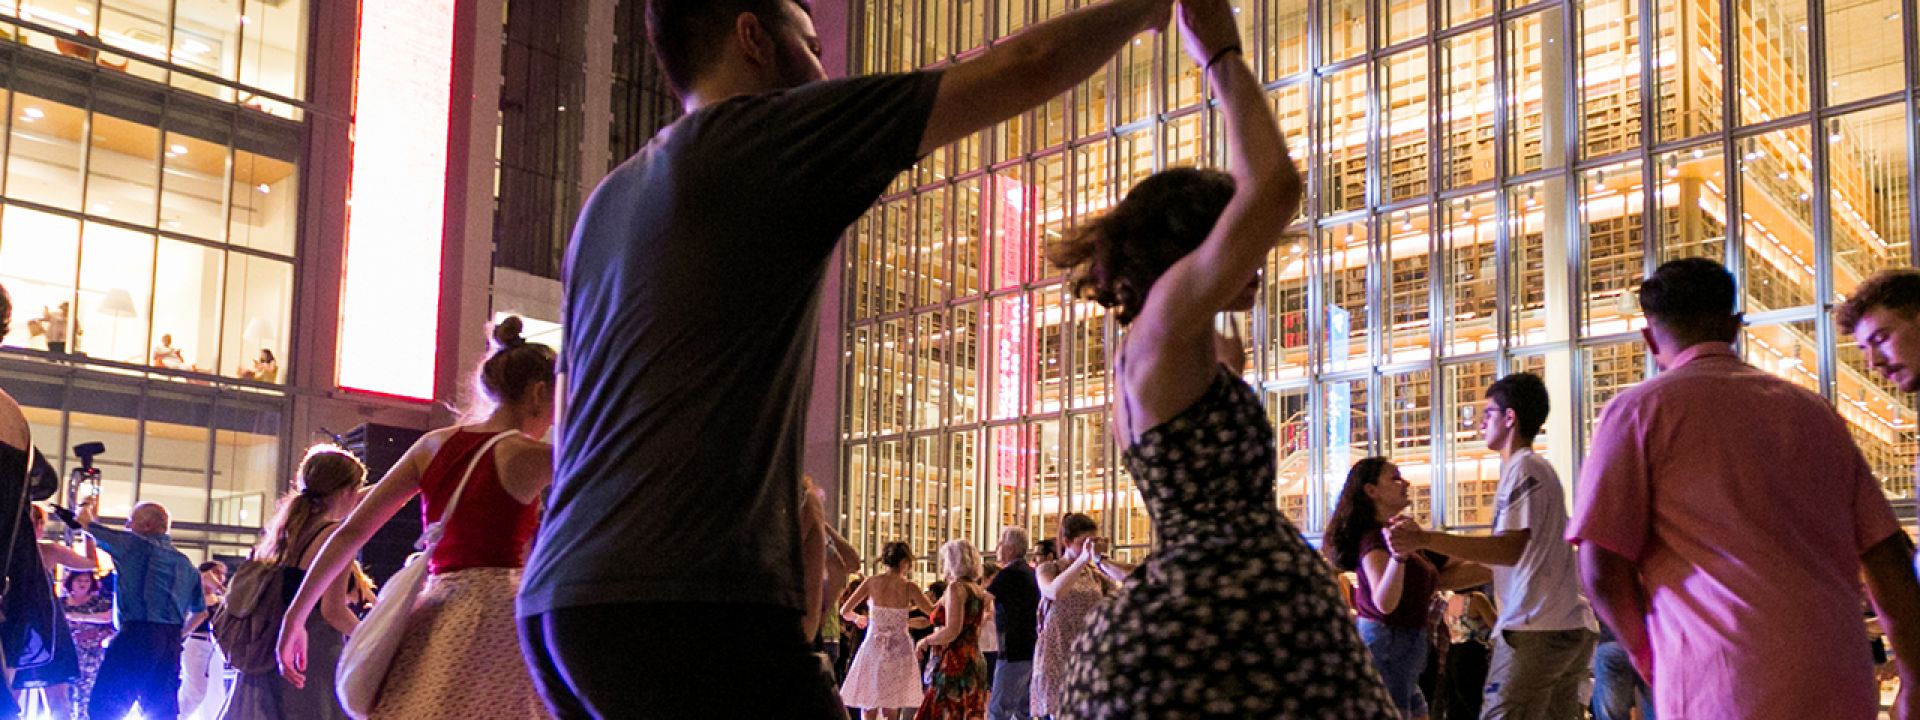 Φωτογραφία που απεικονίζει ανθρώπους να χορεύουν swing